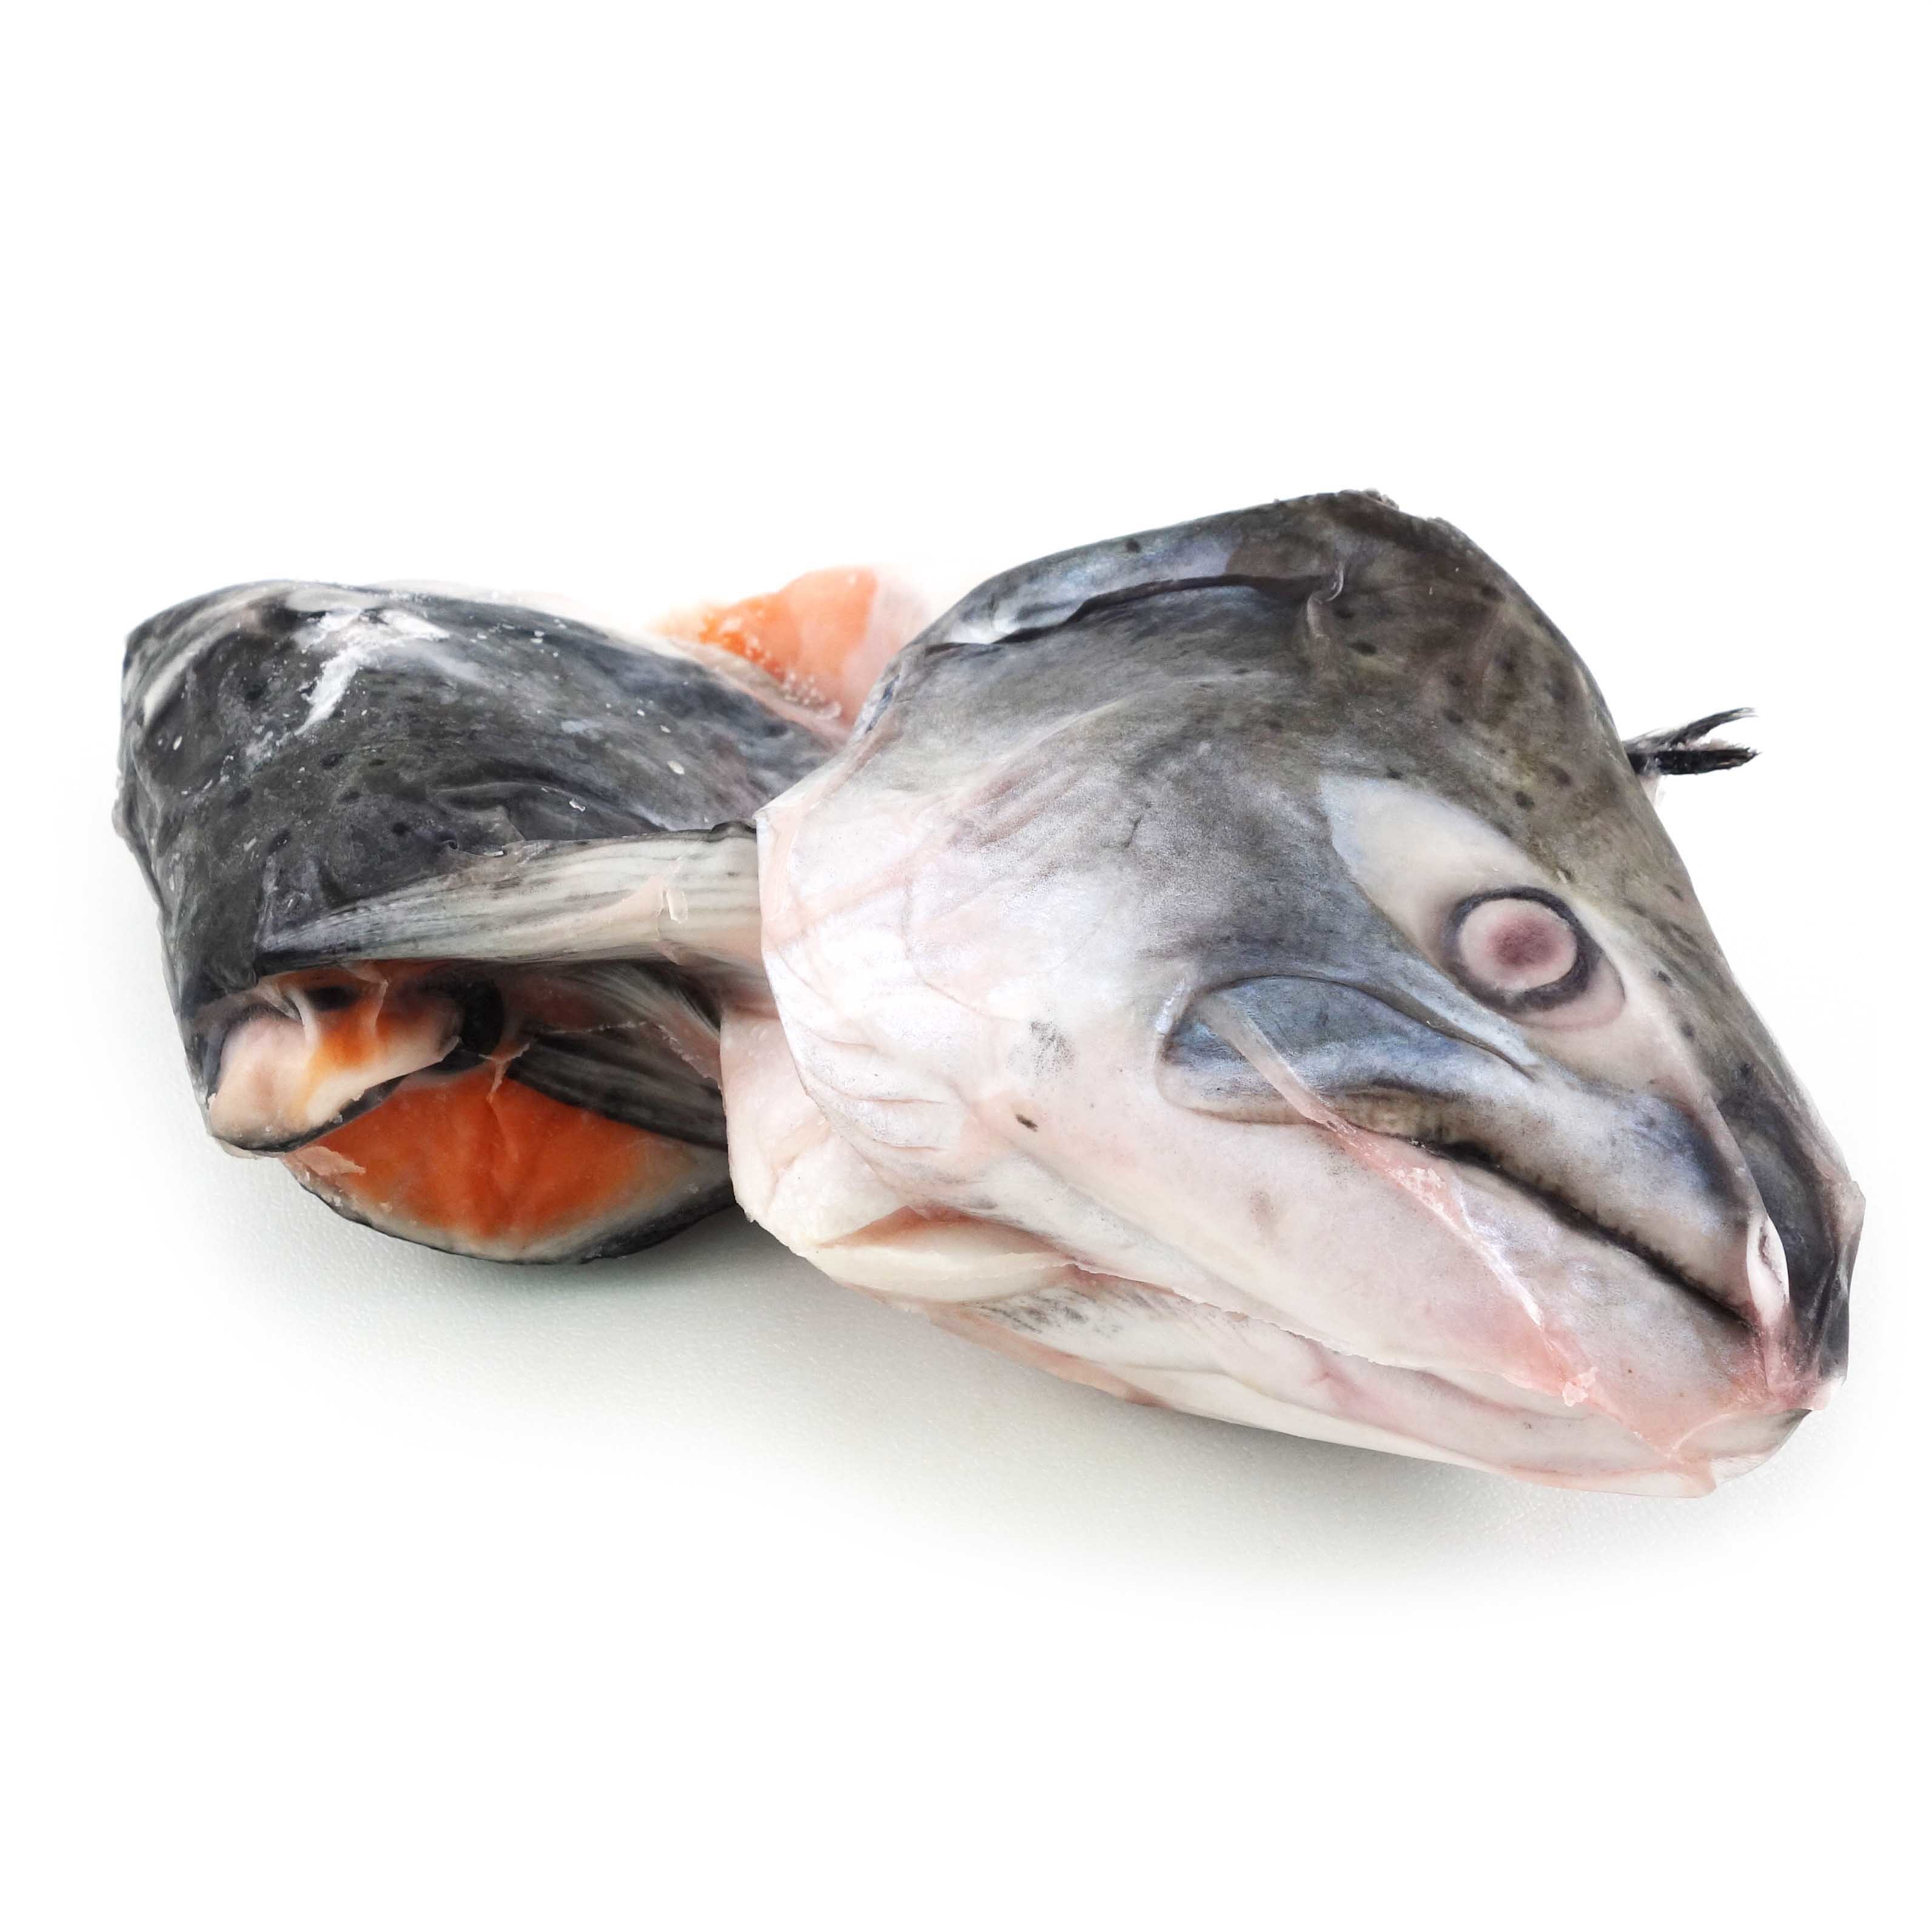 紐西蘭帝王三文魚(King Salmon)頭